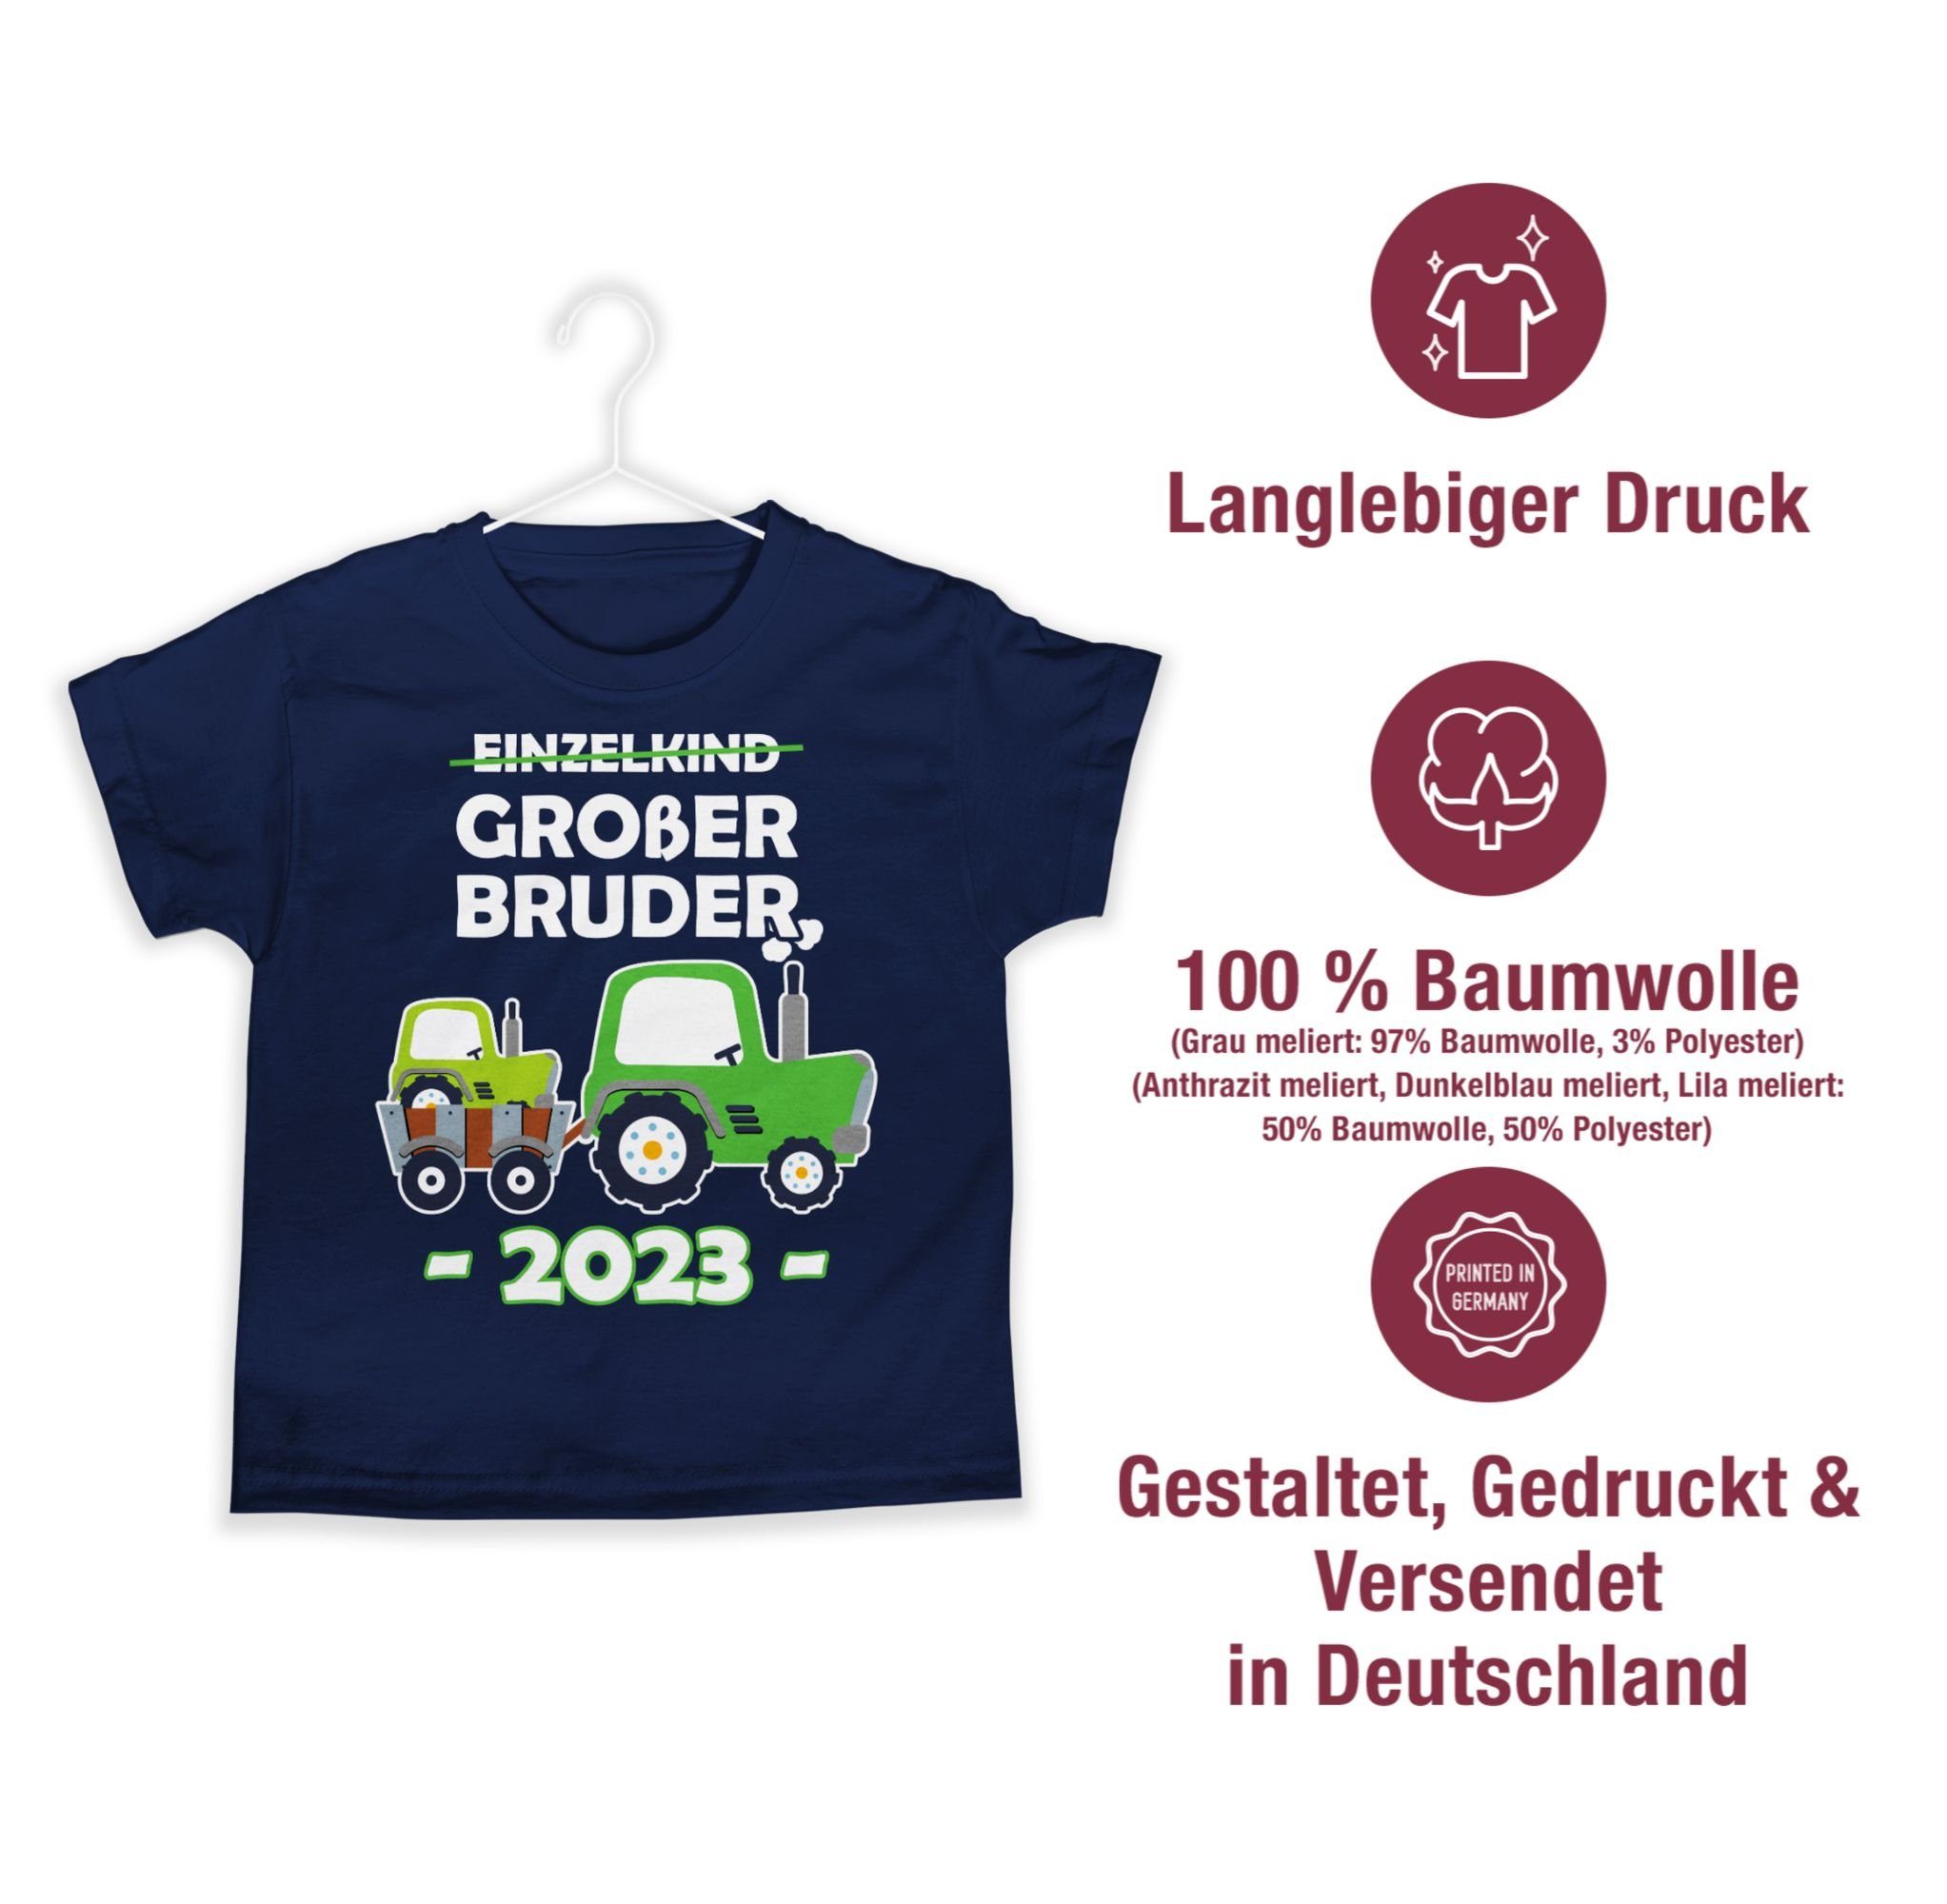 Großer 01 Bruder Bruder Großer Shirtracer T-Shirt Einzelkind Dunkelblau 2023 Traktor